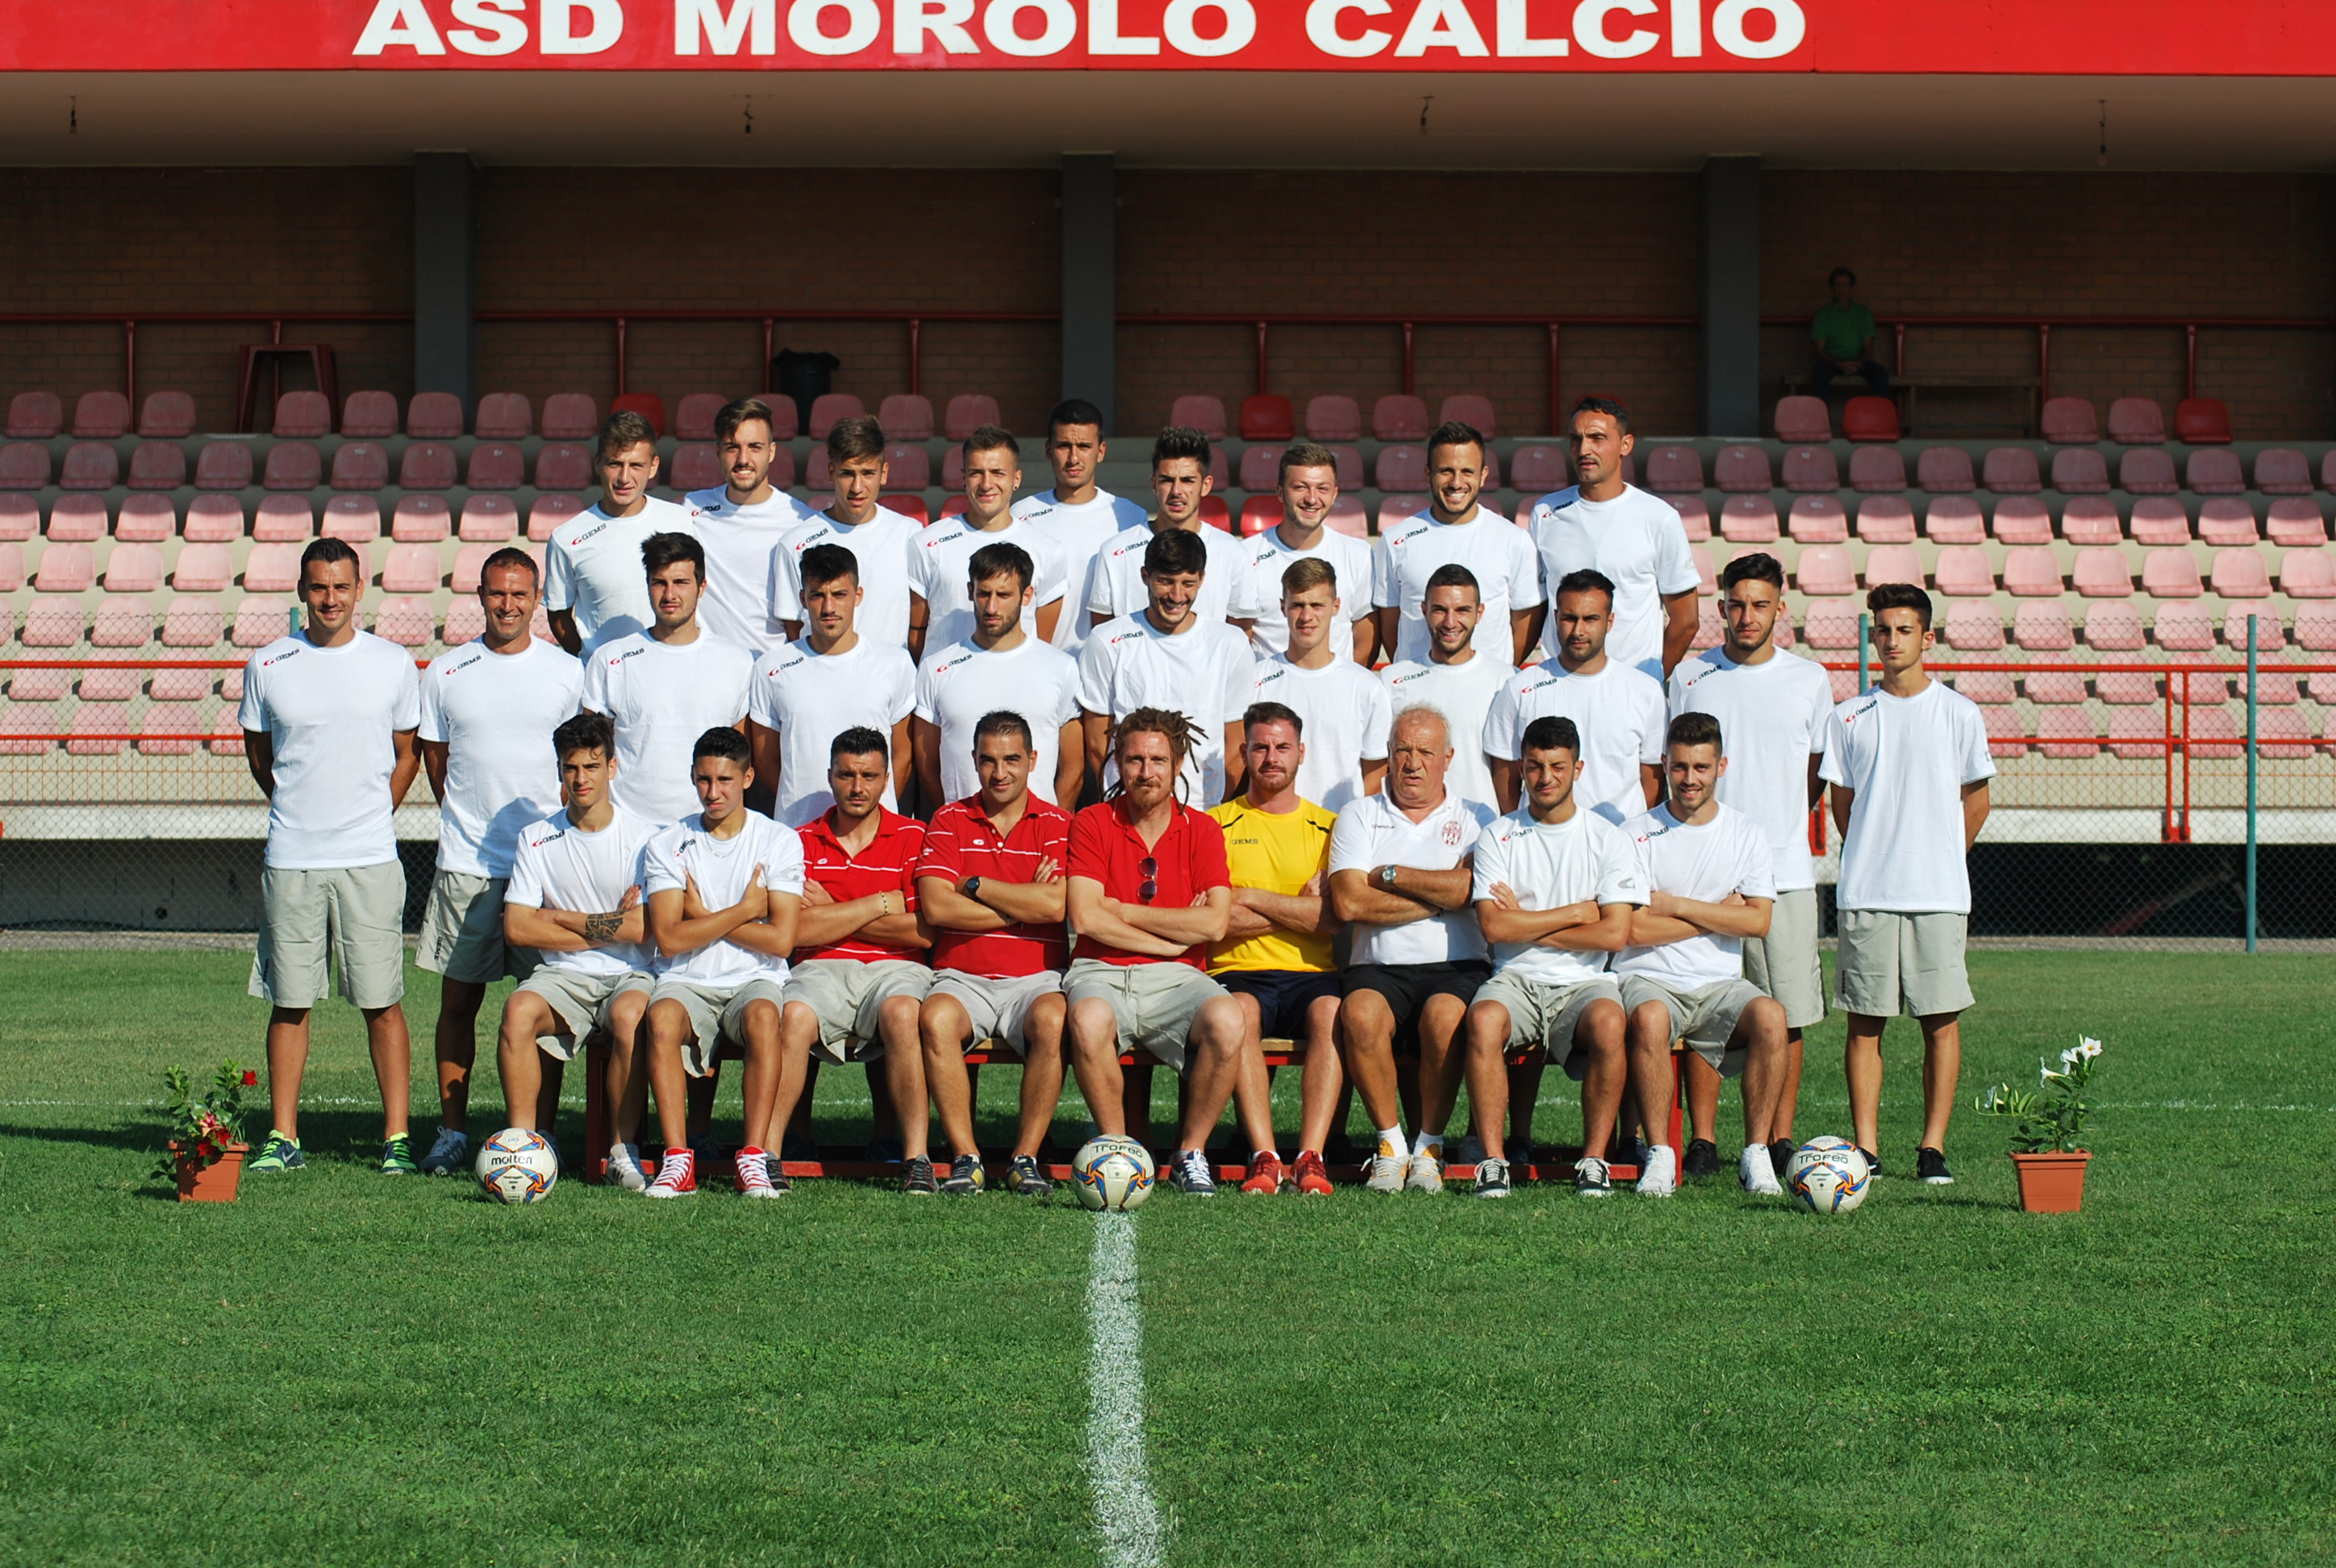 Morolo Calcio, professionalità e competenza con il Segretario Maiuri e l’istruttore Padovani